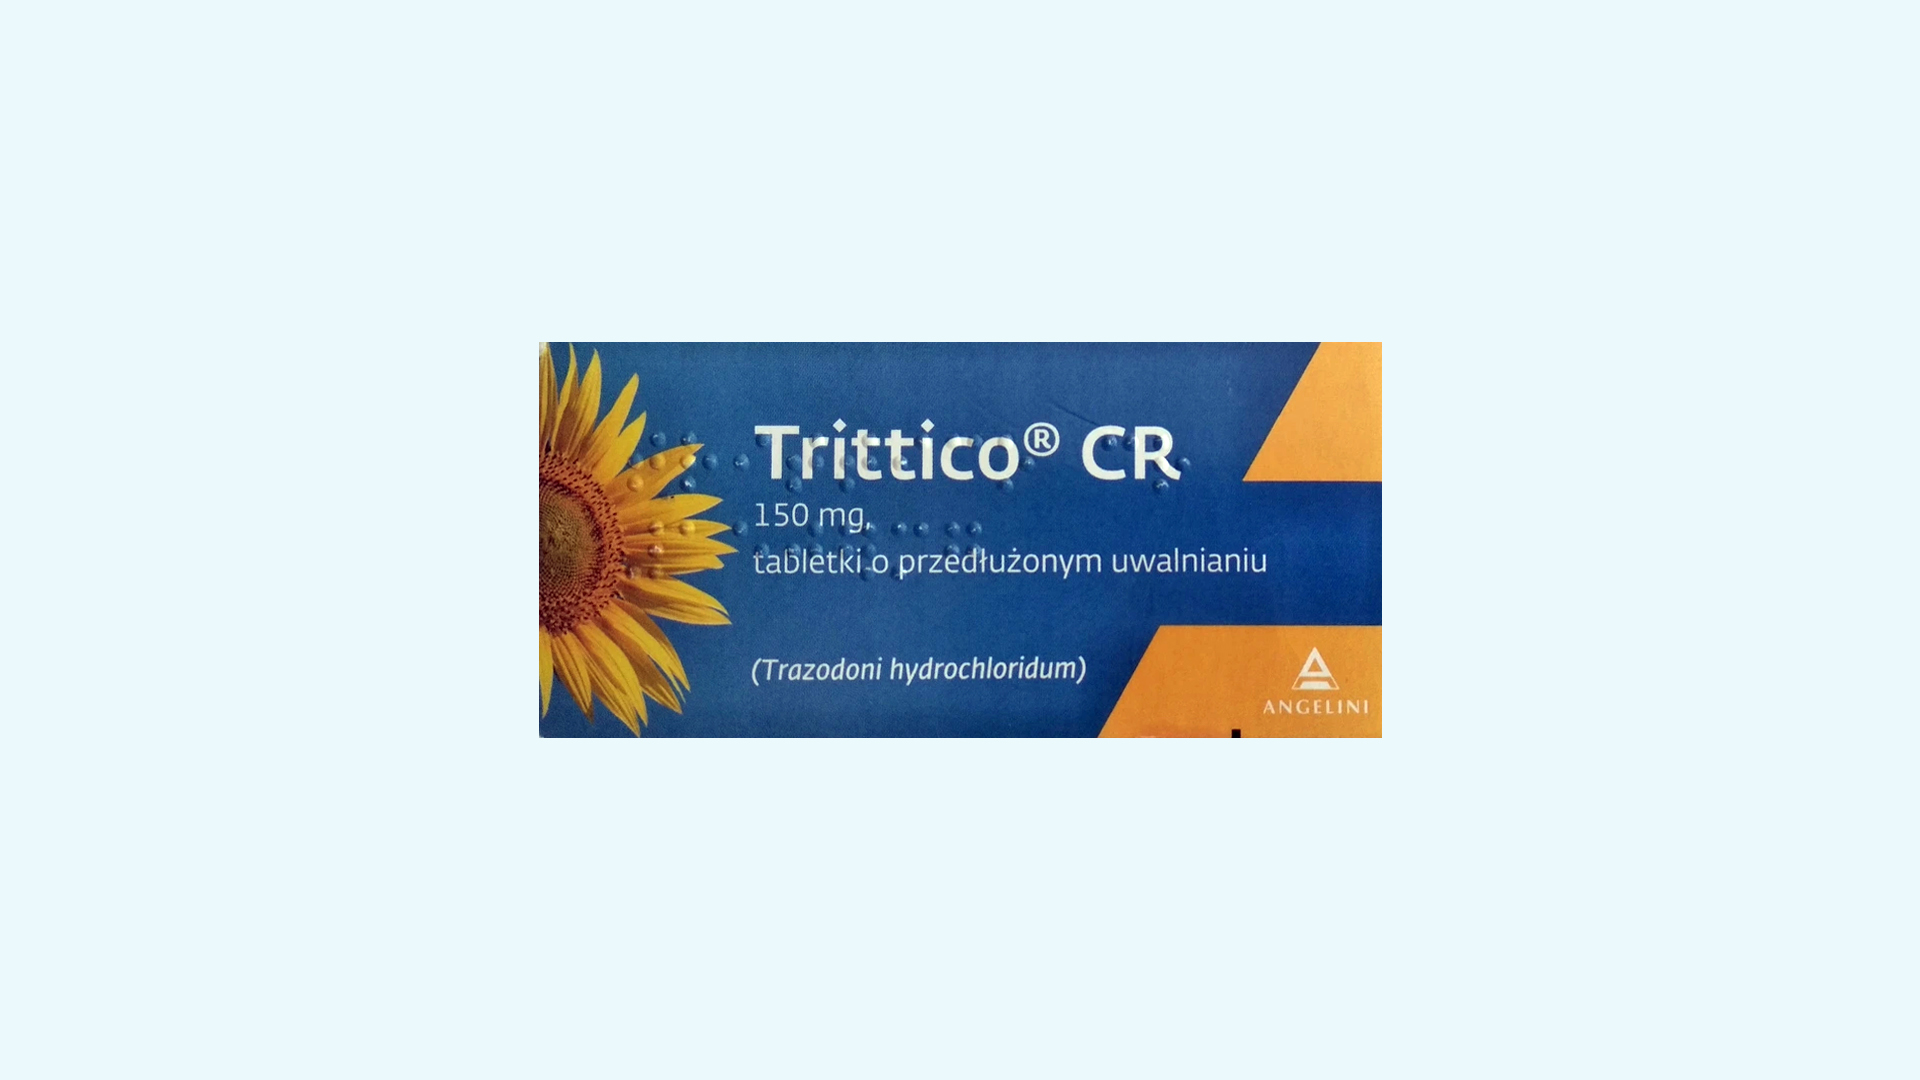 Trittico CR – informacje o leku  dawkowanie oraz przeciwwskazania